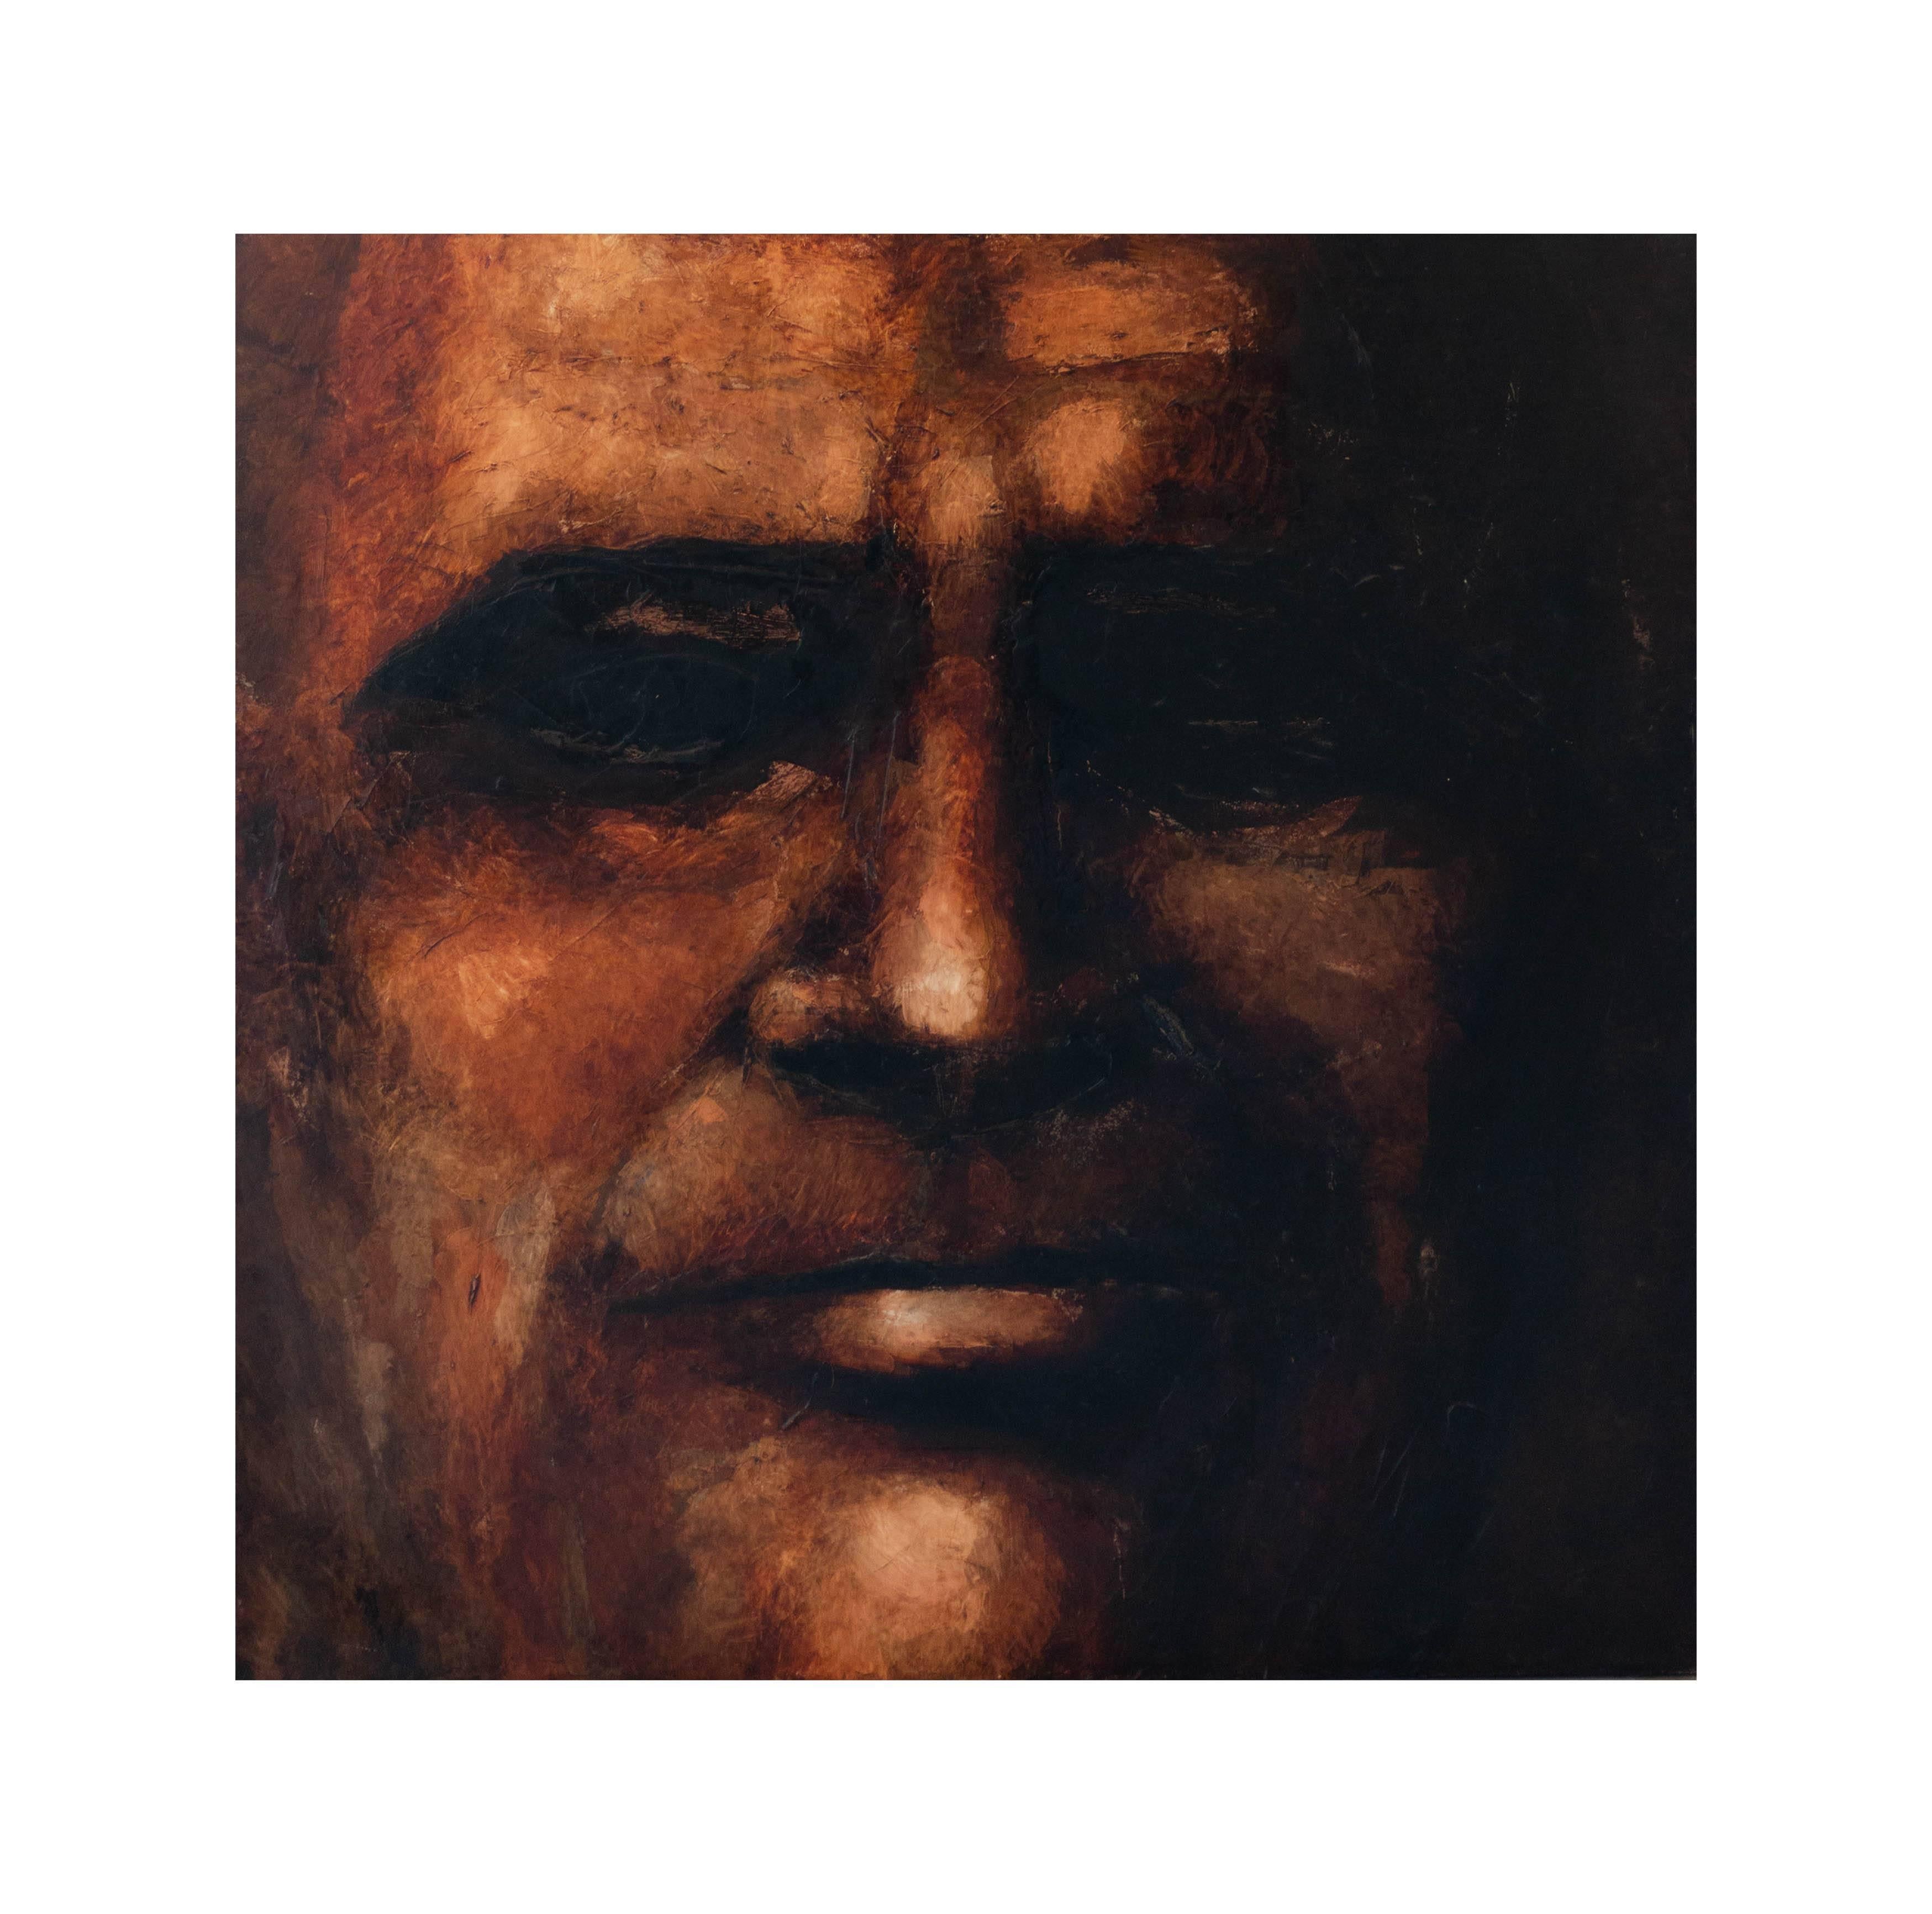 Brad Miller Portrait Painting - Face Up Close